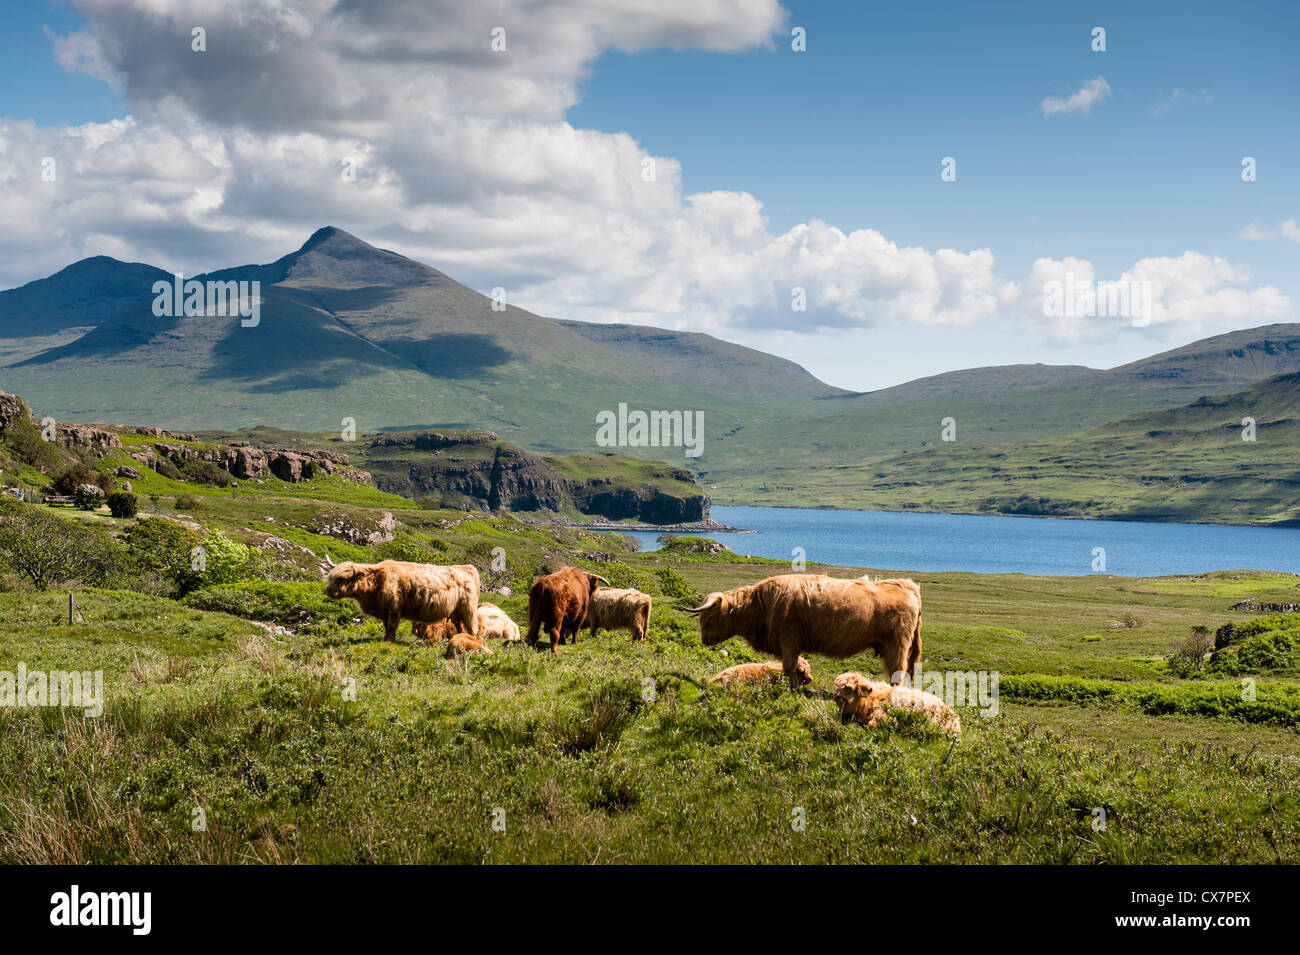 La Scozia è un bellissimo paese pieno di verdi colline, sharp aspre vette e blu scuro lochs. Foto Stock